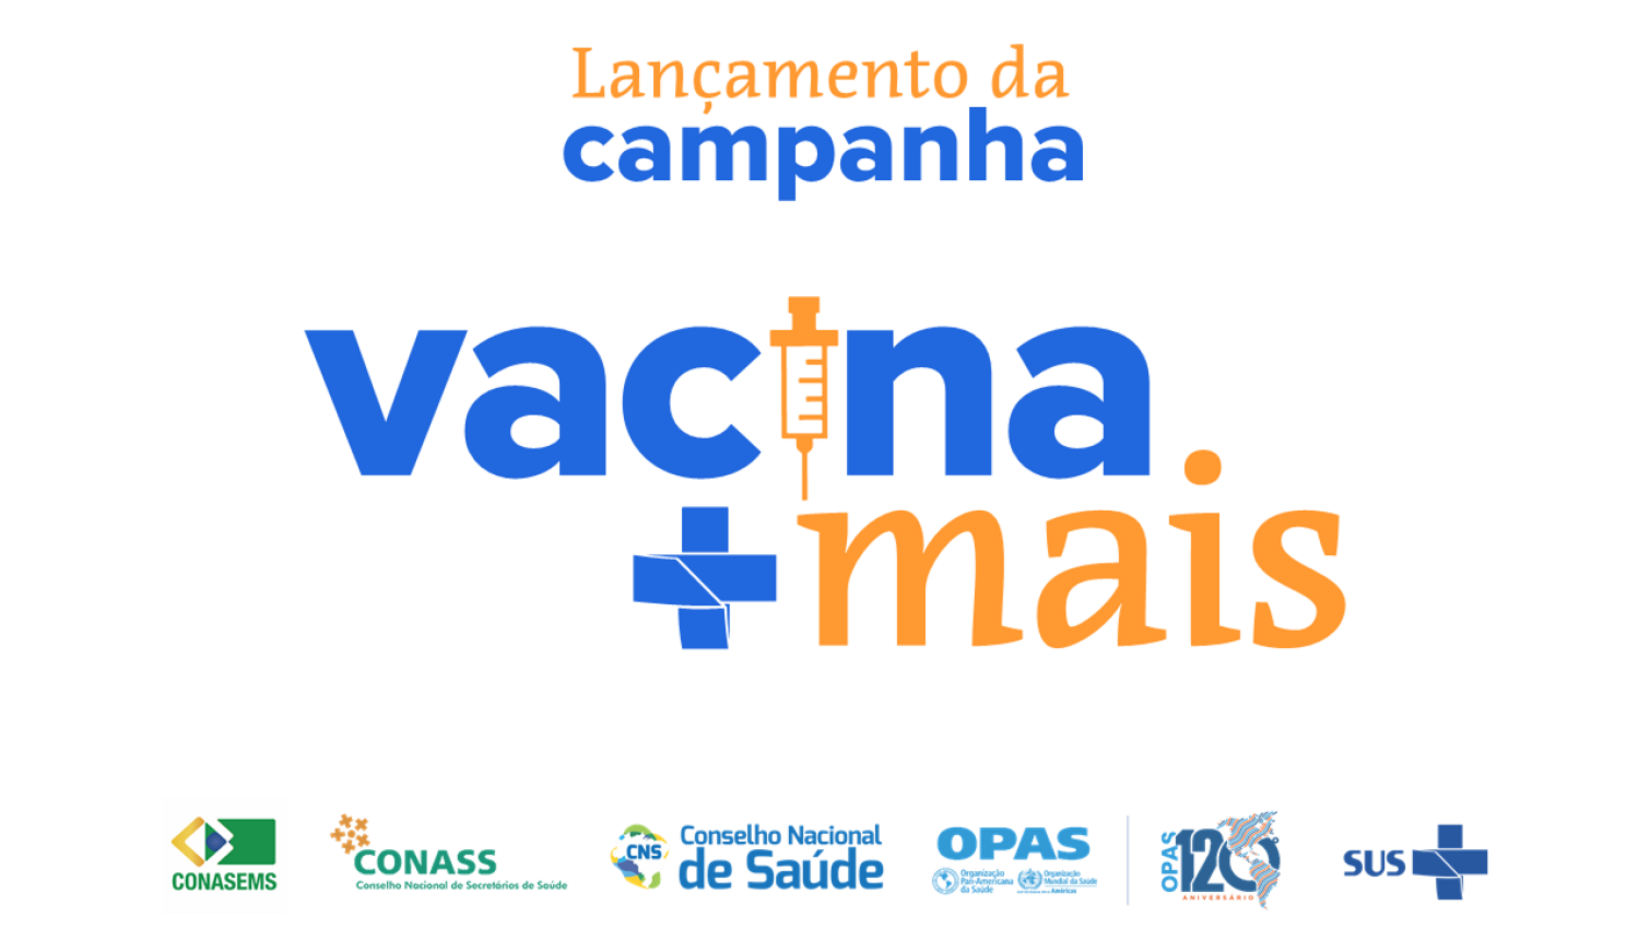 A iniciativa vai ter lançamento às 10h, na sede OPAS/OMS em Brasília, com transmissão ao vivo no canal do Conselho Nacional de Saúde no YouTube. 